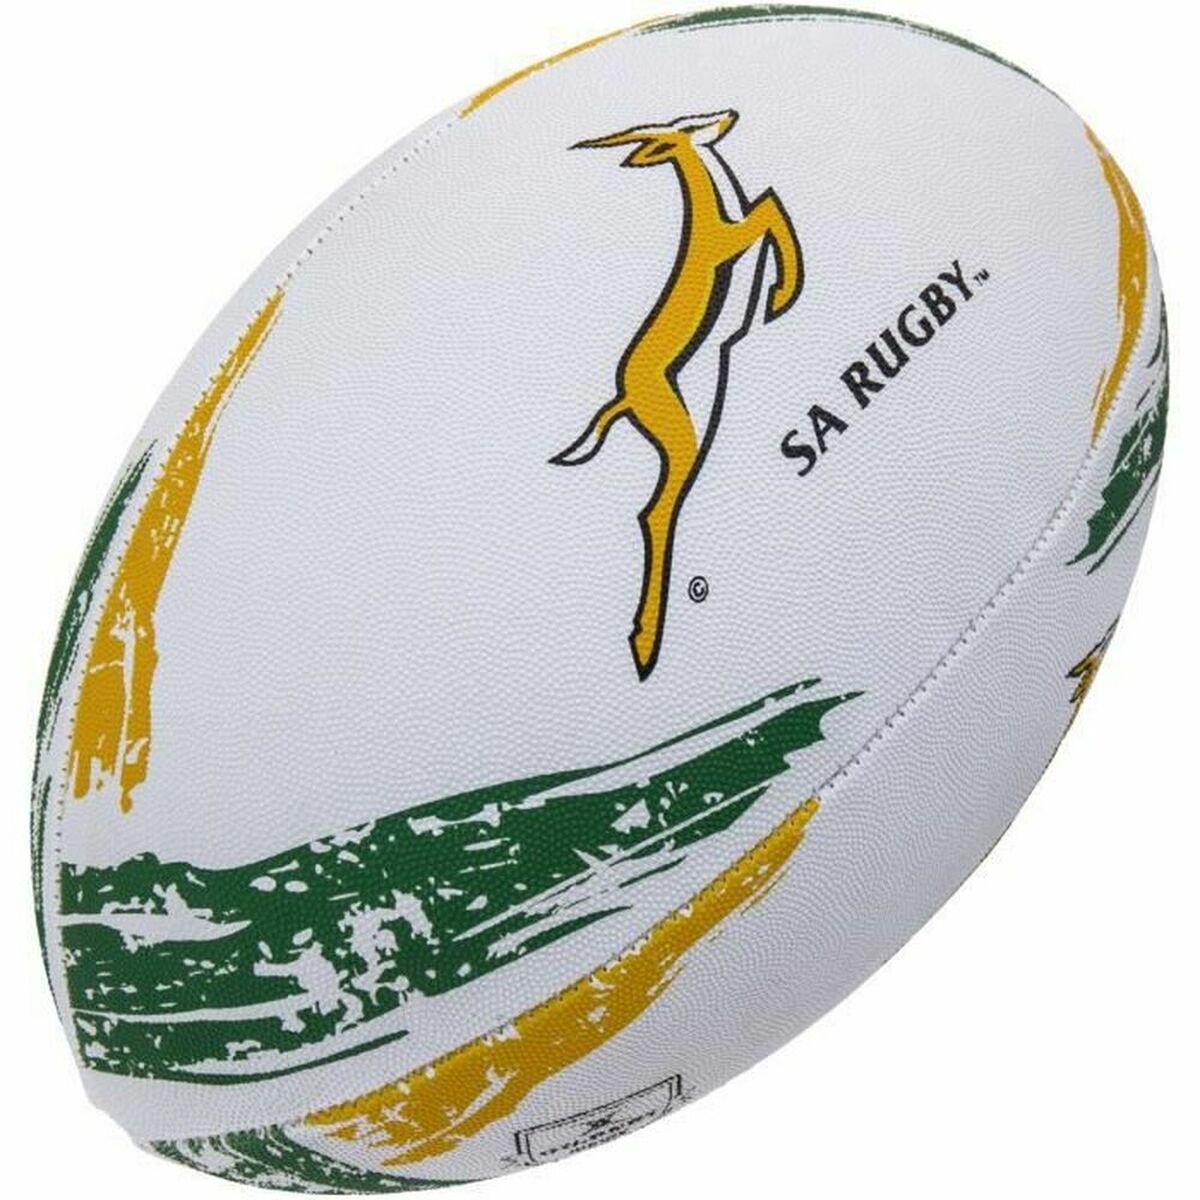 Ballon de Rugby Gilbert GIL027-SA 5 Multicouleur